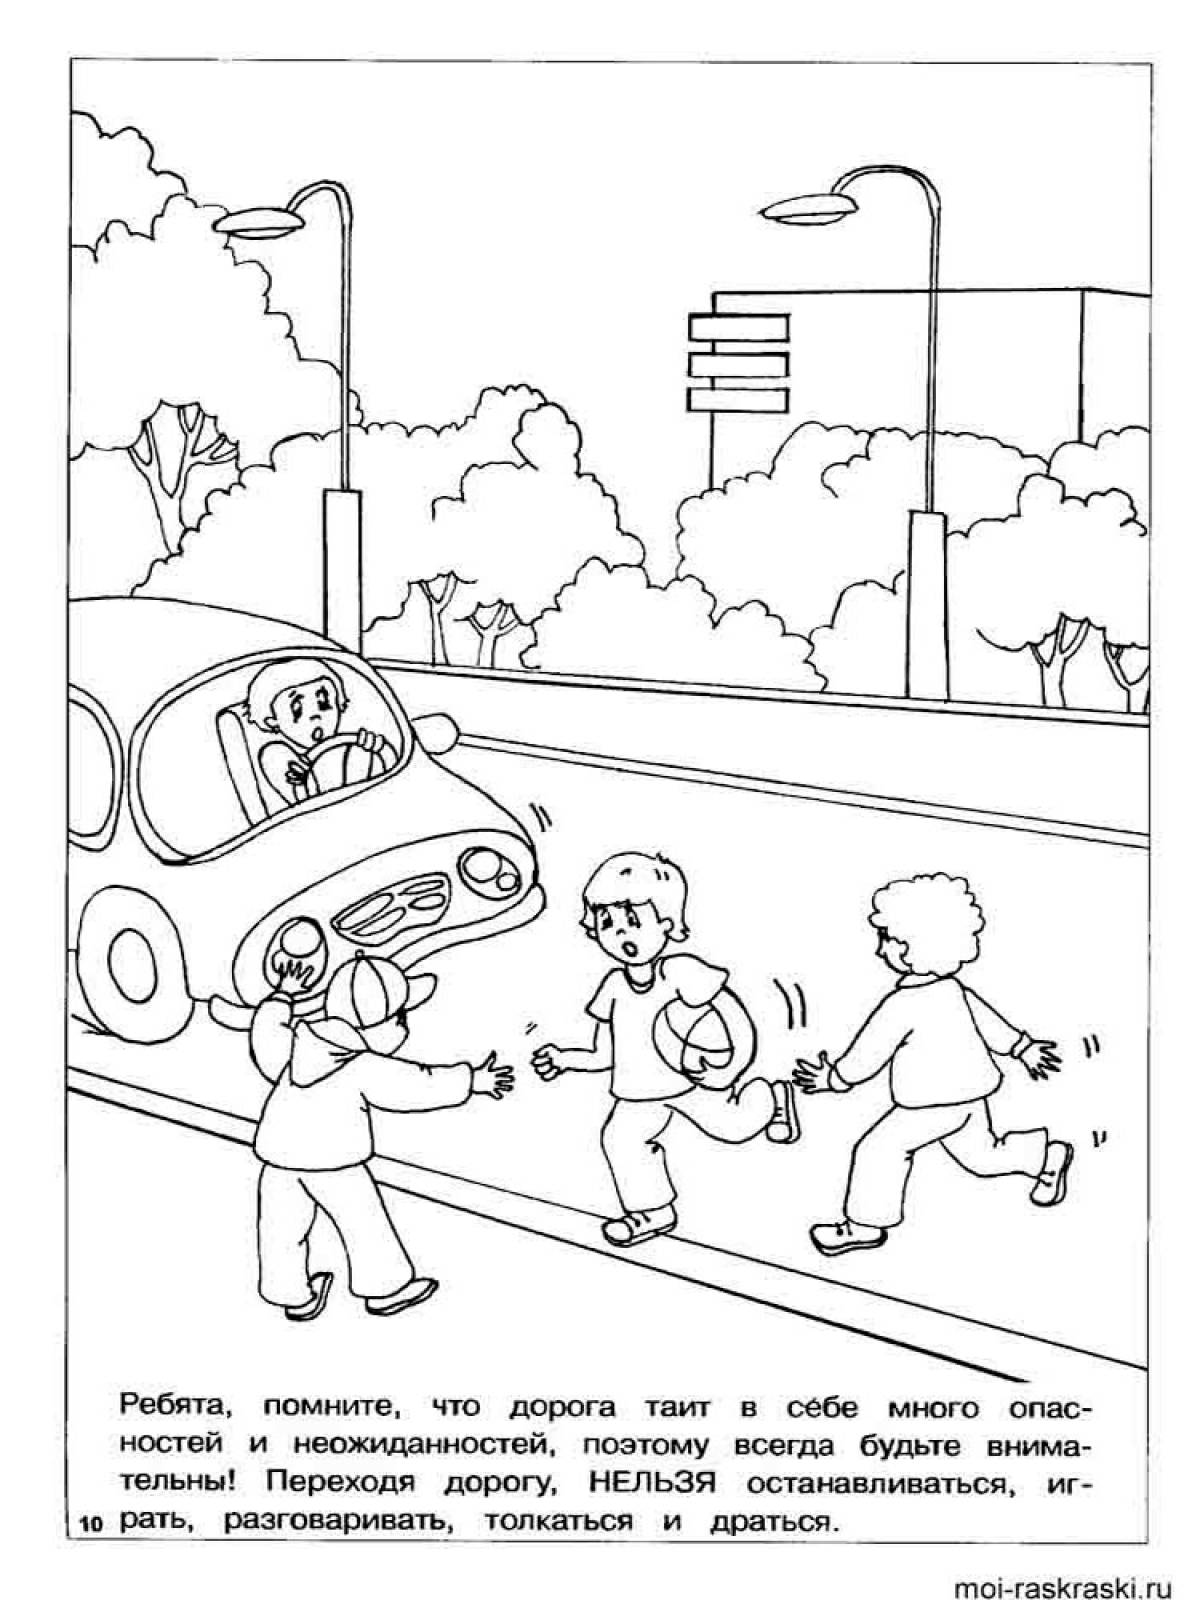 Картинки по правилам дорожного движения для раскрашивания